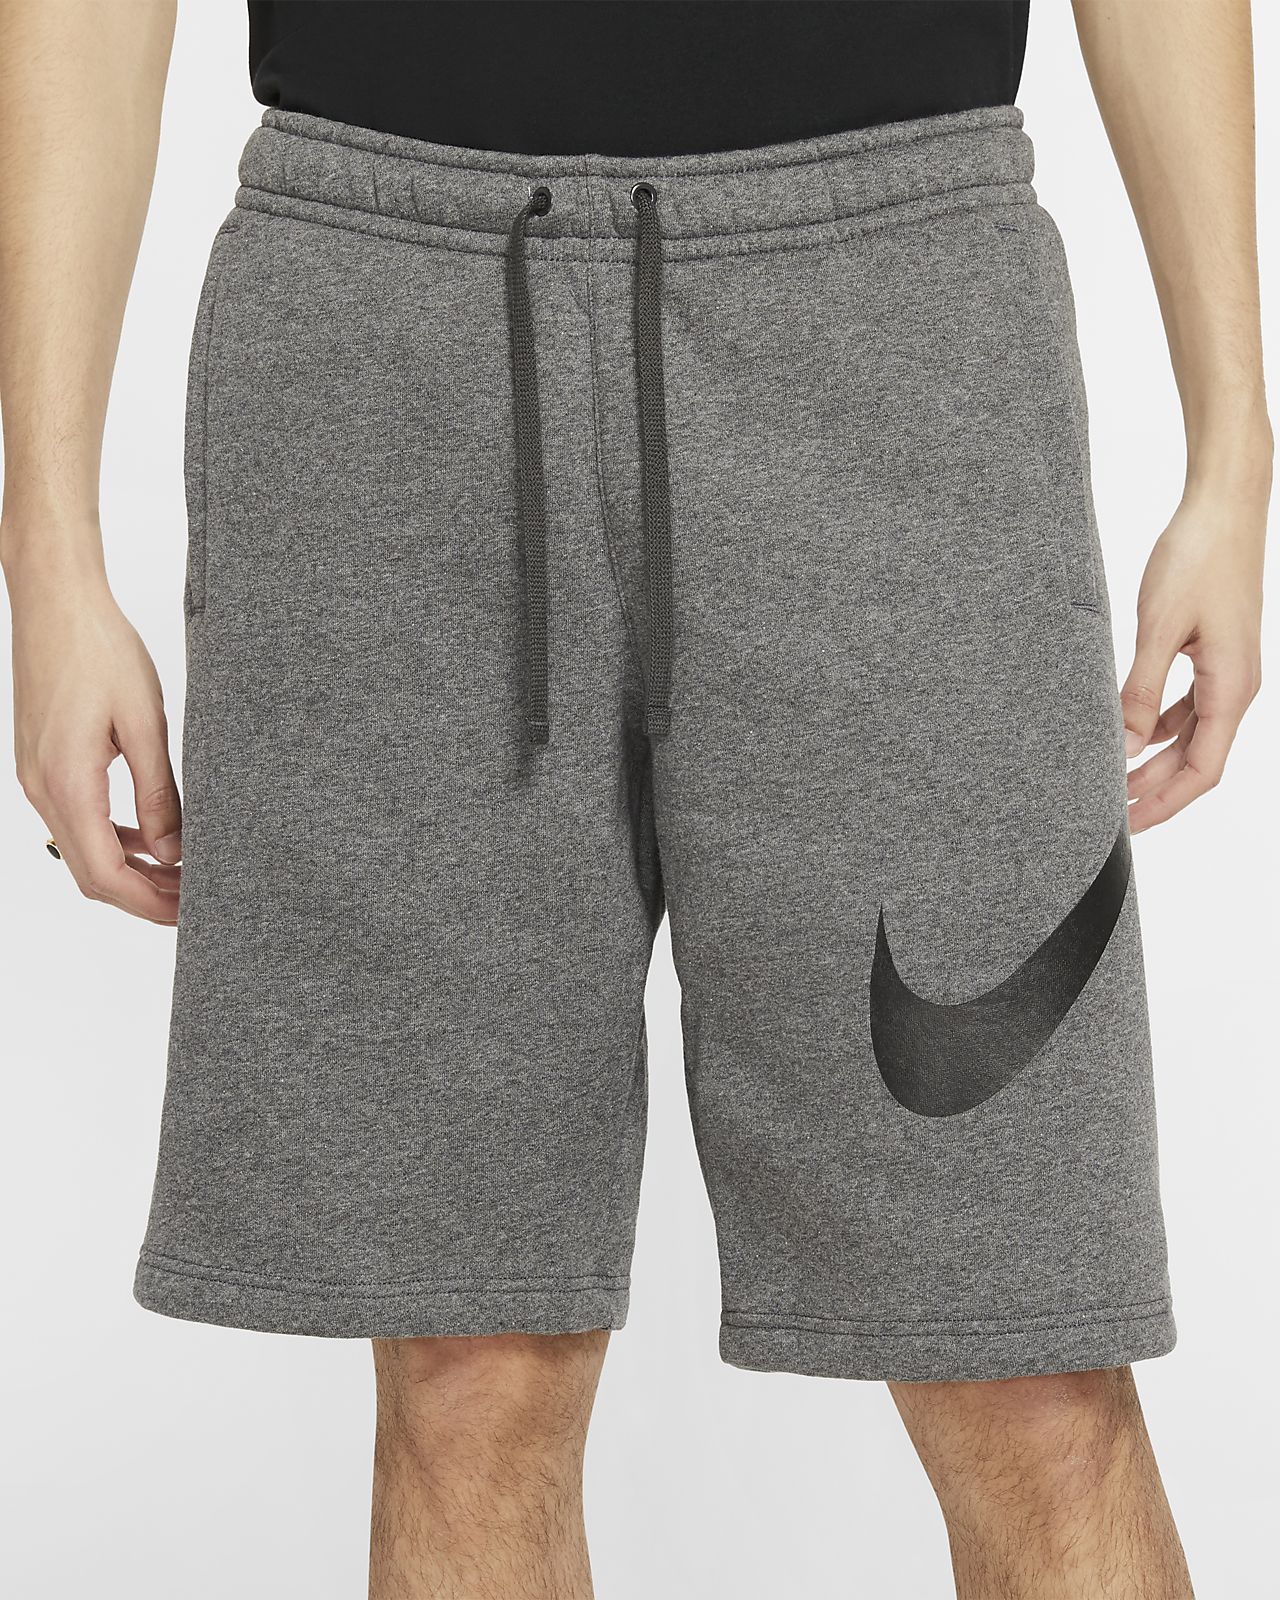 nike sweat shorts sale